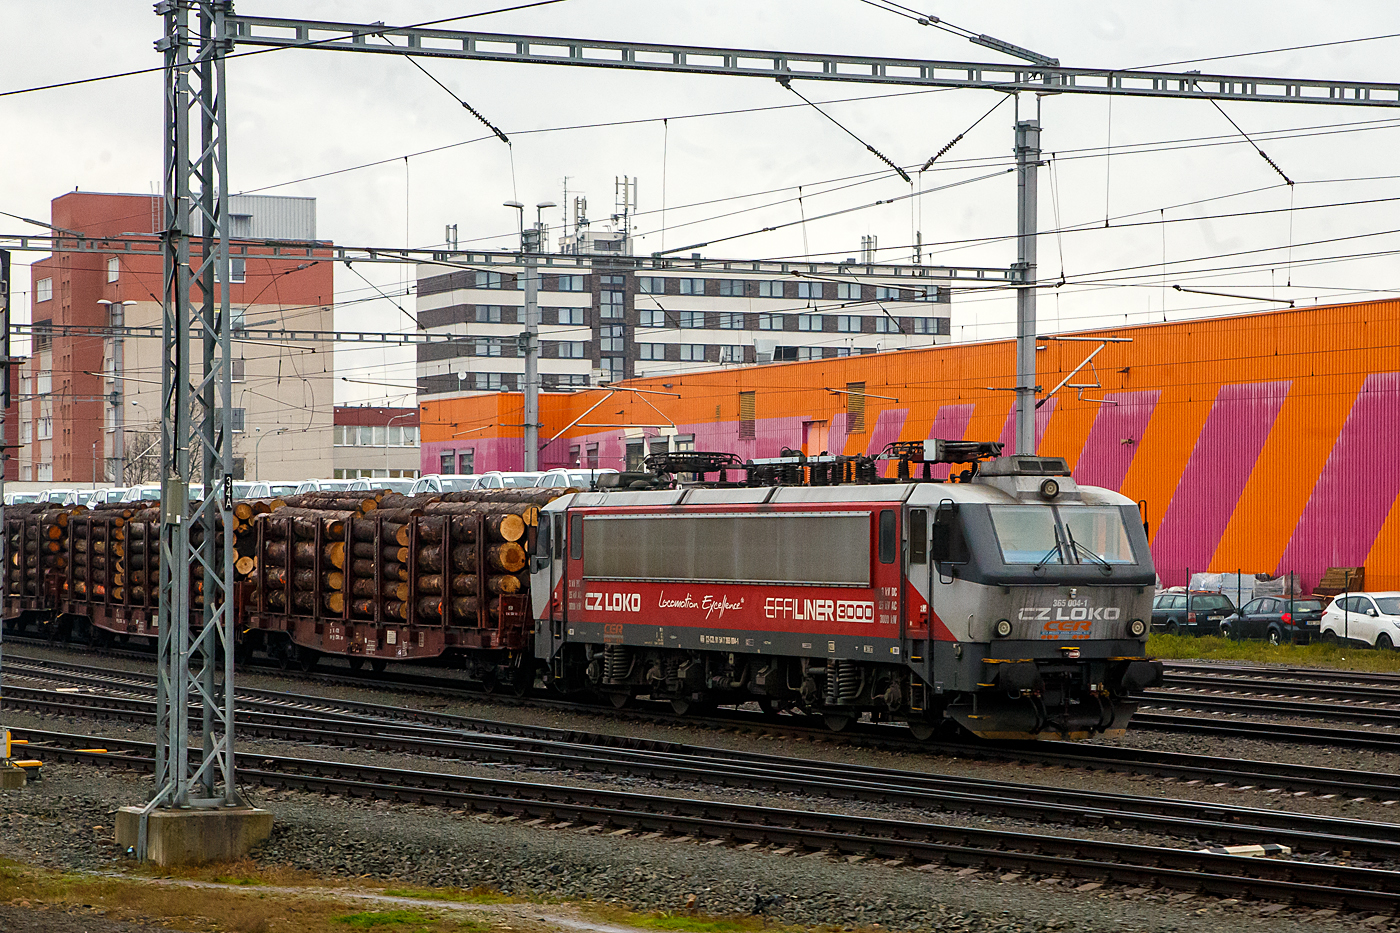 Die an die ungarische CER Cargo vermietet  CZ Loko 365 004-1 (CZ-CZL 91 54 7 365 004-1), eine CZ Loko „Effiliner 3000“, ex SNCB HLE 12, steht am 24.11.2022 bei Pilsen (Plzeň) mit einem Stammholzzug (aufgenommen aus einem alex-Zug). 

Die Lokomotiven NMBS/SNCB Reihe 12 war eine Zweisystem-Elektrolokomotive, die 1986/87 von BN - La Brugeoise et Nivelles (mech. Teil) / ACEC - Ateliers de Constructions Electriques de Charleroi (elektr. Teil) fr die Nationale Gesellschaft der Belgischen Eisenbahnen (NMBS/SNCB) gebaut wurden. Es wurden 12 Stck gebaut, zuletzt wurden sie vor  Gterzge zwischen Belgien und Nordfrankreich eingesetzt. Im Jahr 2012 wurden alle 12 Loks der BR HLE 12 auer Dienst gestellt und an tschechische Unternehmen CZ loko a.s. verkauft und seit 2016 zur Baureihe 365 - CZ LOKO „Effiliner 3000“  modernisiert, damit sie fr den Gterverkehr eingesetzt werden knnen.

Der komplette elektrische Teil (auer Fahrmotoren) wurde vollstndig modernisiert. Die neue Traktionsausrstung wurde von EVP Nov Dubnica geliefert, das Steuerungssystem von MSV elektronika. Durch den  neuen Transformator musste der Hauptrahmen verstrkt werden. Neu eingebaut wurde auch eine widerstands- und regenerative elektrodynamische Bremse. Die Dauerleistung bleibt in etwa gleich, die Hchstgeschwindigkeit reduziert sich aufgrund des zu erwartenden Einsatzes im Gterverkehr auf 120 km/h. Aus dem gleichen Grund auch keine Zugheizung eingebaut.

Der Umbau wurde im Mrz 2016 abgeschlossen und anschlieend begannen Tests. Die Eisenbahnbehrde ordnete den Lokomotiven die Baureihe 365 zu. Das Unternehmen bezeichnet die Lokomotiven als EffiLiner 3000. 

Der Spitzname fr die Loks ist „belgičanka“ (belgisch)

Des Weiteren wurde  ein Vertrag ber den Kauf von 12 Maschinen der NMBS/SNCB Serie 11 abgeschlossen.

TECHNISCHE DATEN:
Werksbezeichnung: EffiLiner 3000
Hersteller:  BN/ACEC (1986 - 1987), als SNCB Srie 12
Modernisiert von: CZ LOKO (ČMO Přerov) (2016-2020, d.z. 9 Stck)
Spurweite: 1.435 mm
Achsformel: Bo’Bo’
Lnge ber Puffer: 18.650  mm
Hhe: 4.220 mm
Breite: 2.910 mm
Drehzapfenabstand:  9.000 mm
Treibraddurchmesser: 1.250 mm (neu)
Dienstgewicht: 85 t
Achslast: 21 t
Hchstgeschwindigkeit:  120 km/h
Dauerleistung: 2.910 kW 
Anfahrzugkraft: 225 kN
Kleister befahrbarer Gleisbogen: R 120 m
Stromsystem:  3 kV DC und 25 kV 50Hz AC
Anzahl der Fahrmotoren: 4 vom Typ LE622S
